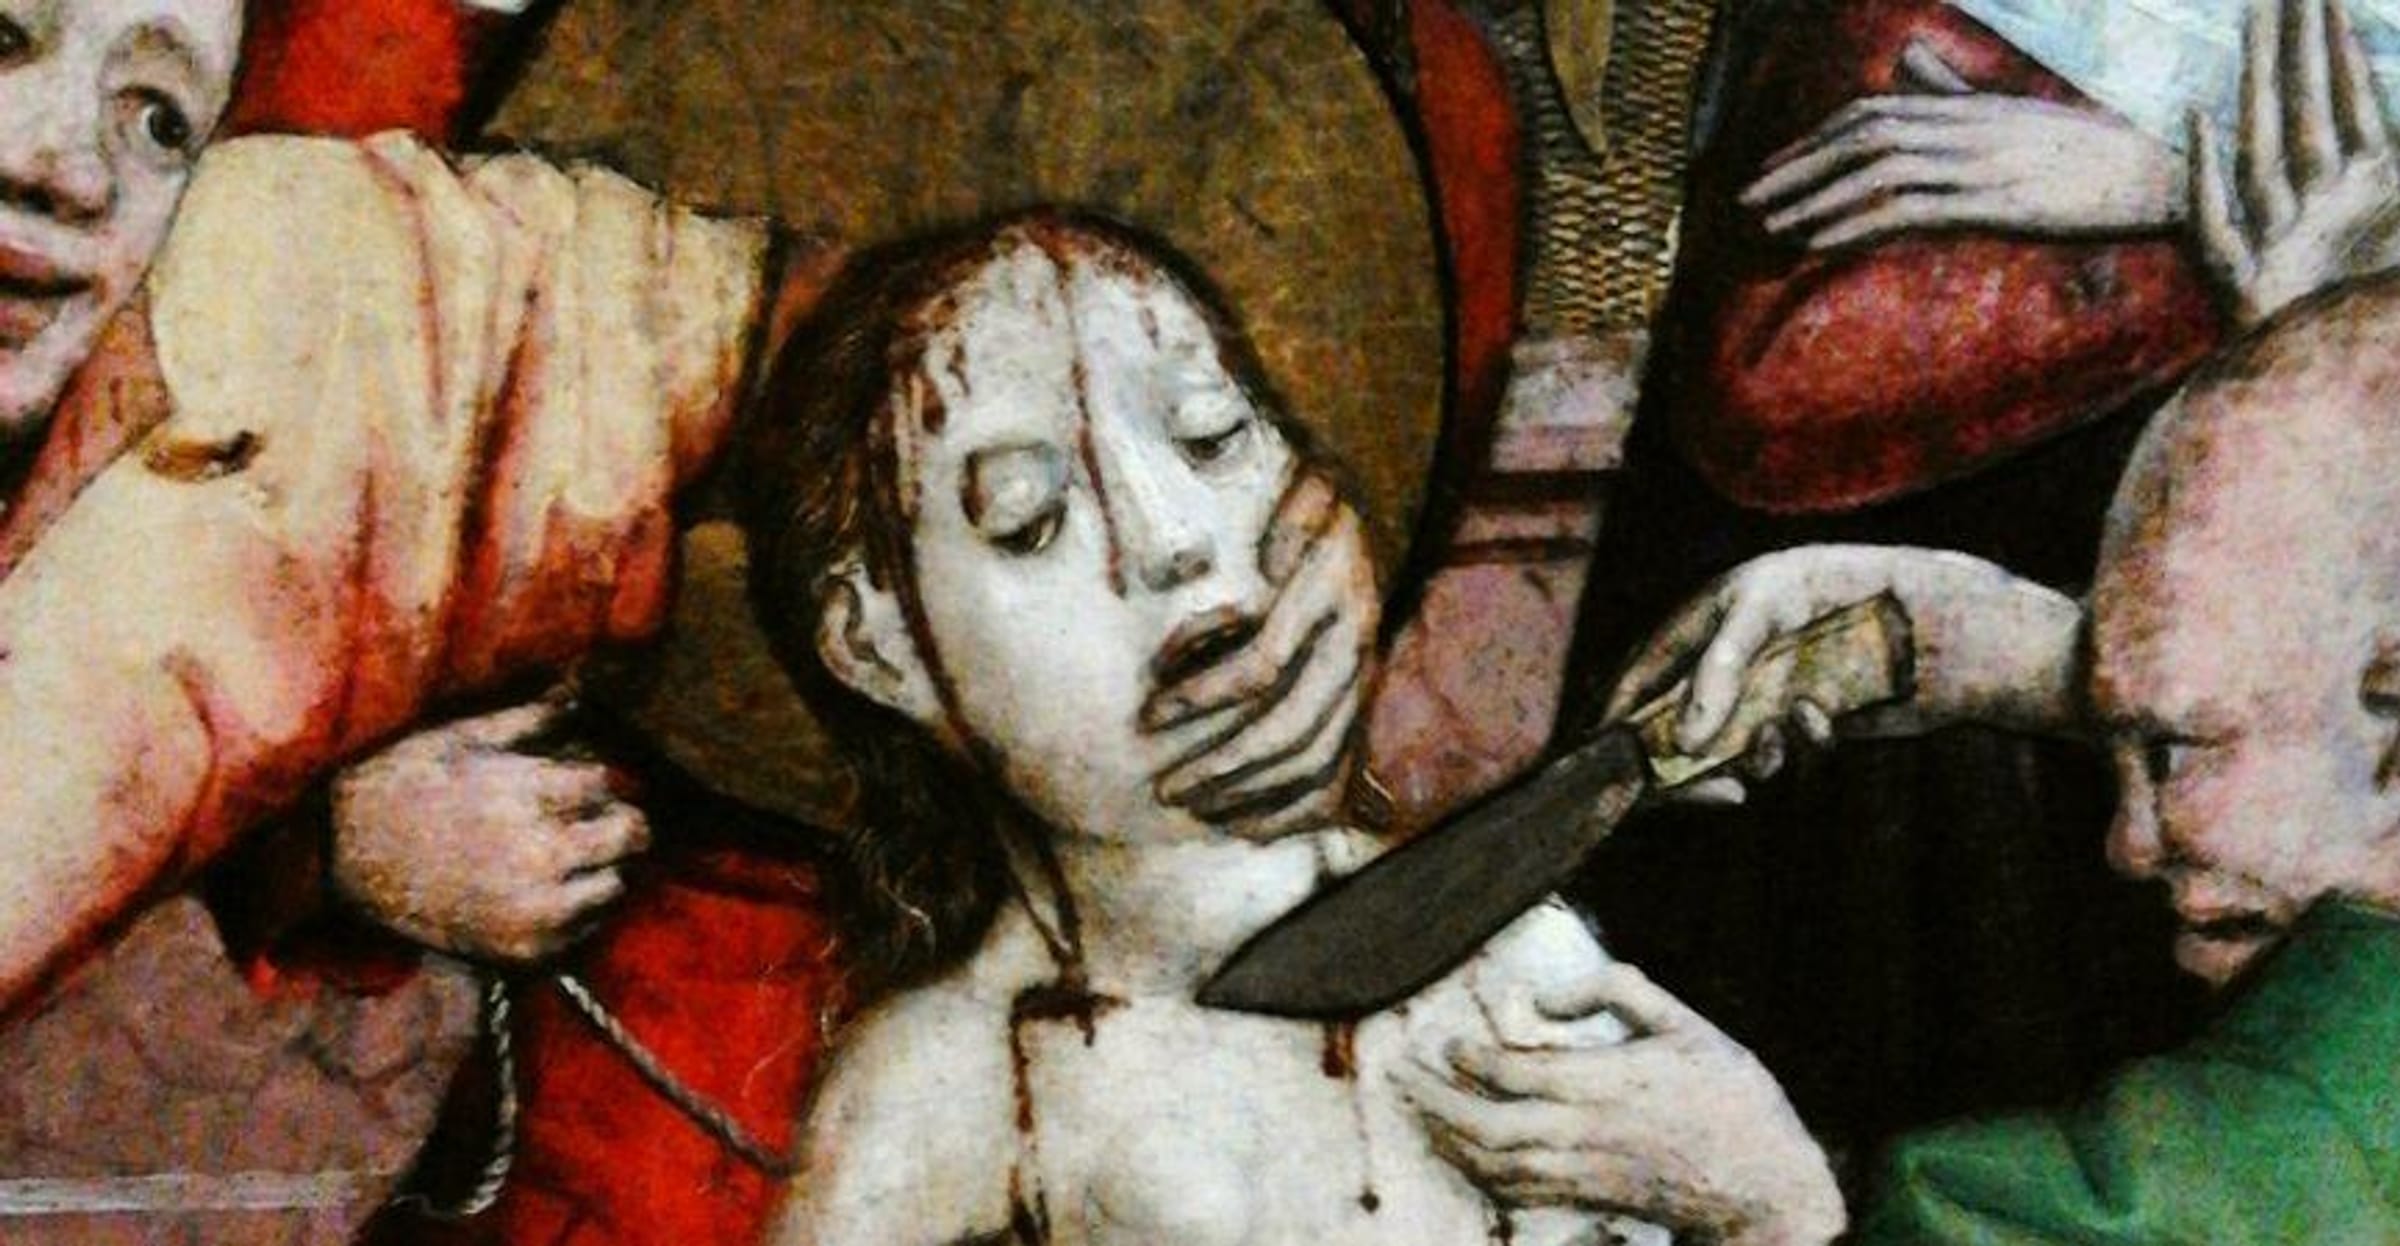 13 Horrifying Torture Methods Used On Women